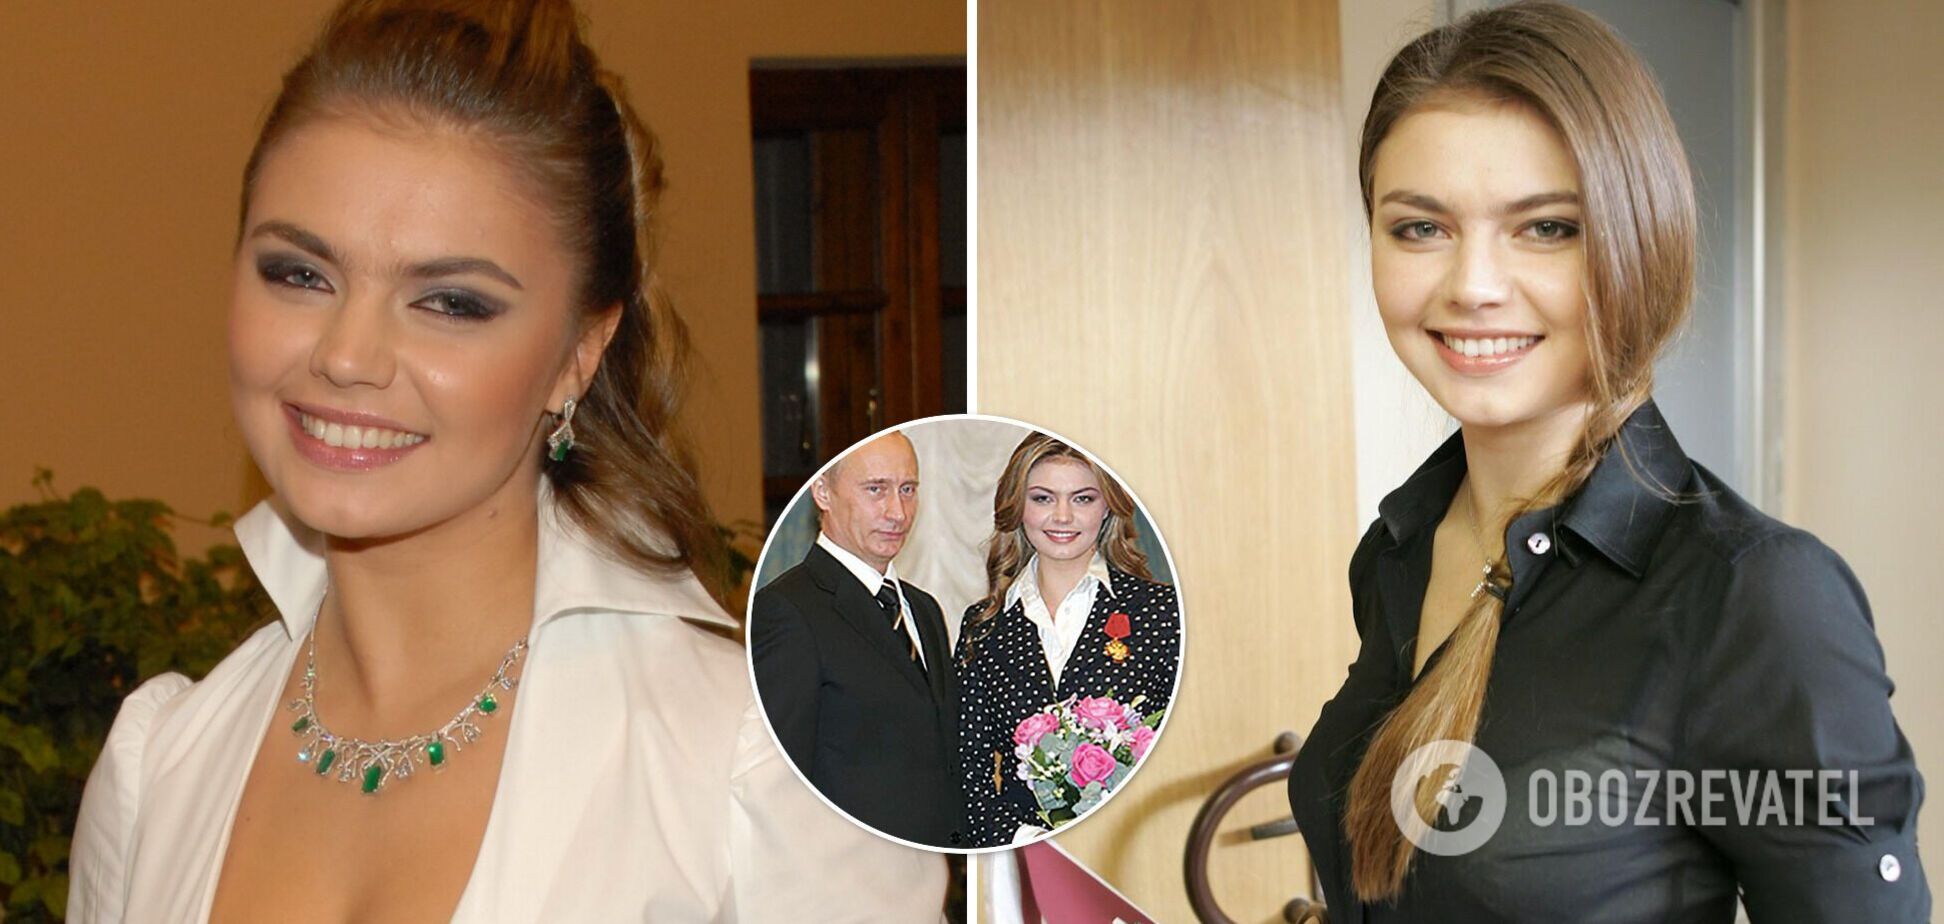 Похудевшая 'любовница' Путина впервые за долгое время появилась на публике. Фото и видео